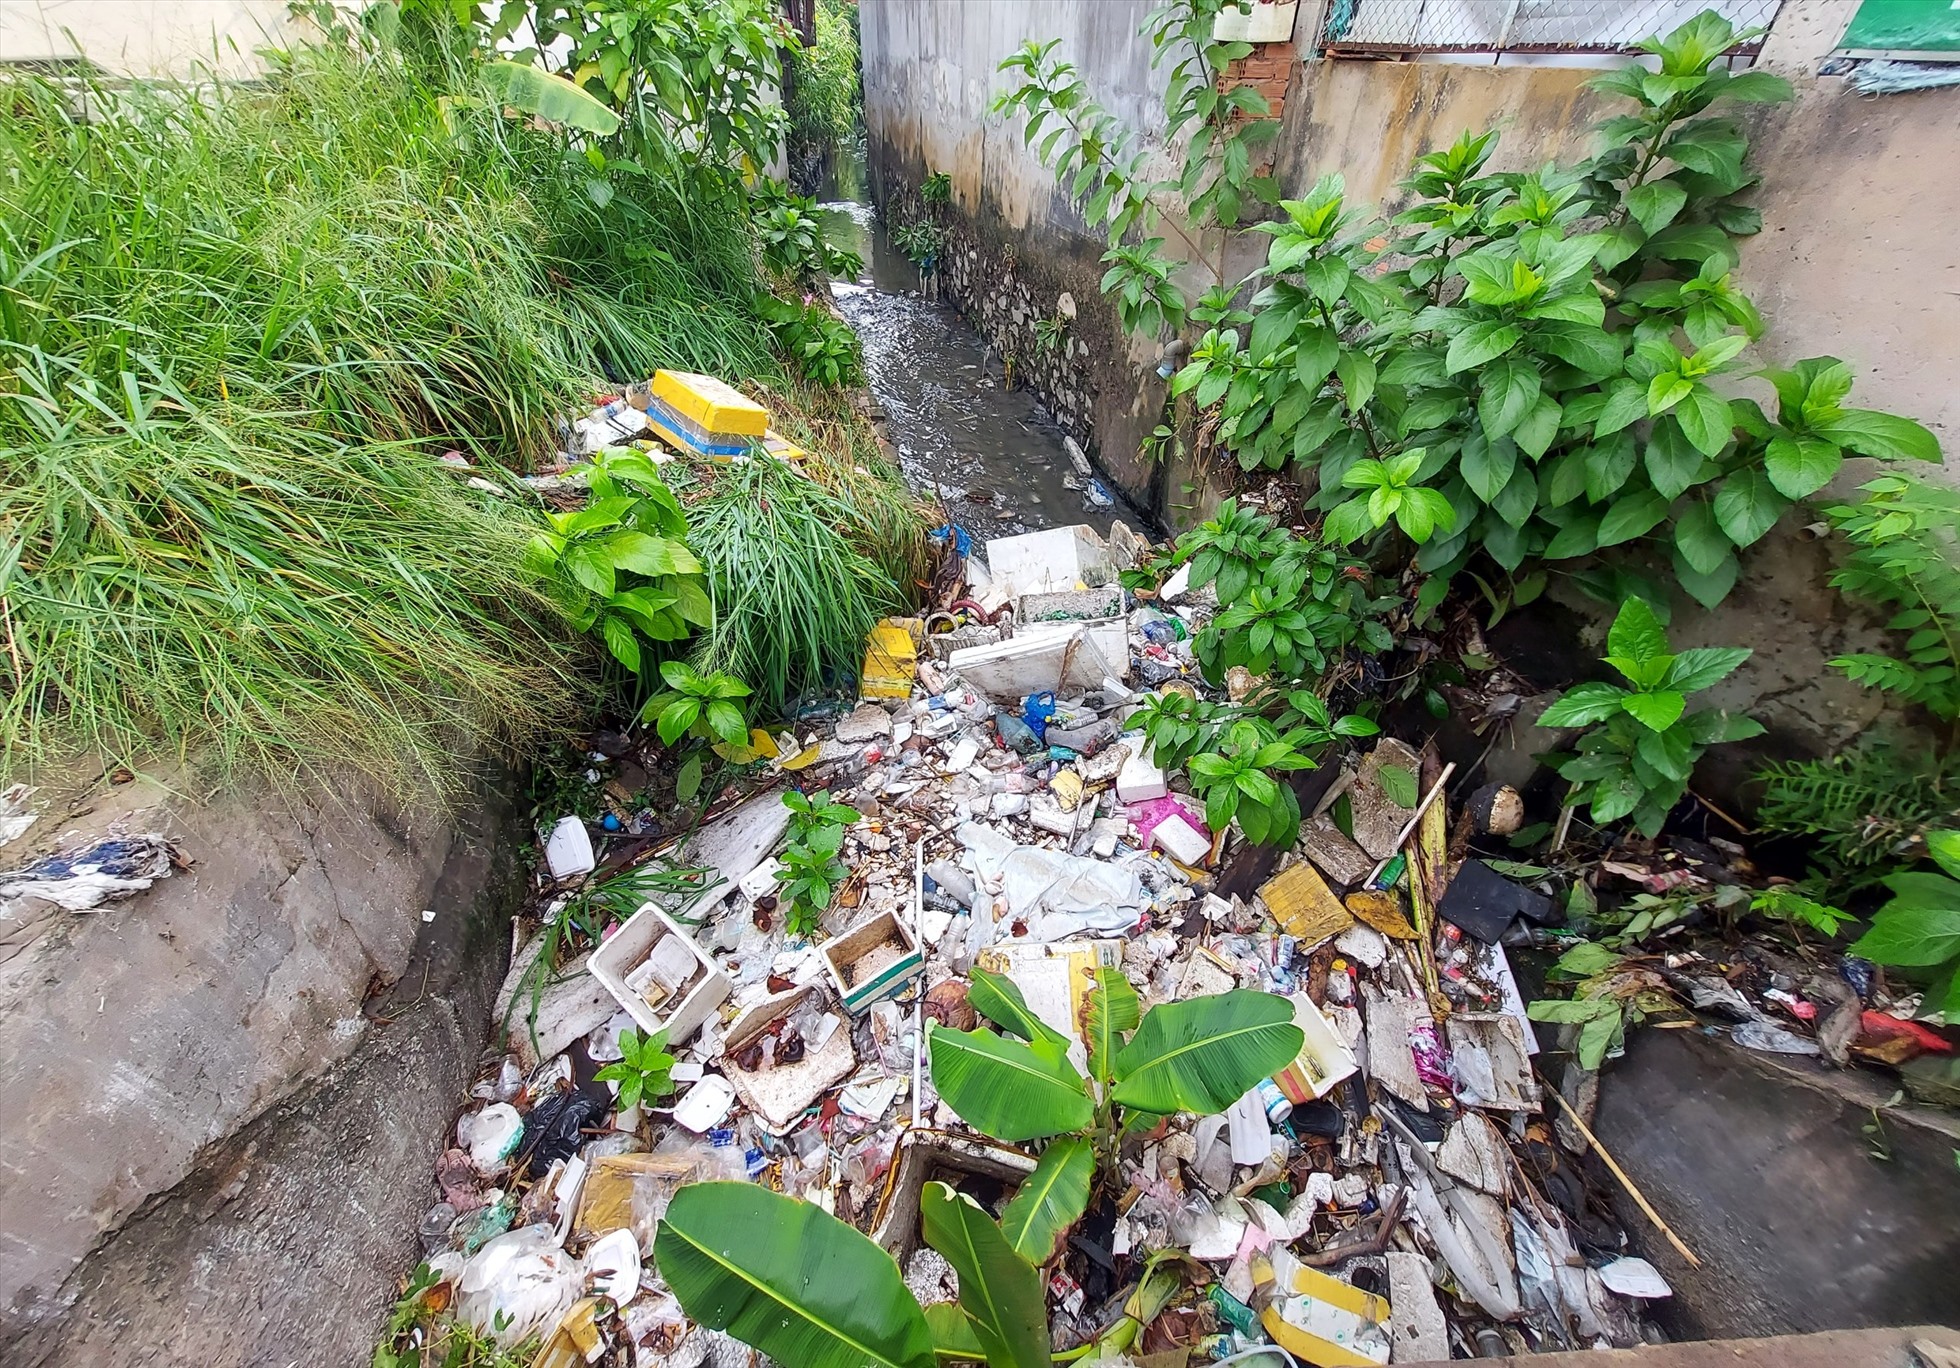 Người dân sống gần đây cho biết rác thải bịt cống thoát nước nhưng chính quyền địa phương không có ai dọn dẹp. Mỗi khi mưa lớn gây tắc nghẽn dòng chảy, người dân phải ra vướt rác để nước thoát nhanh hơn.